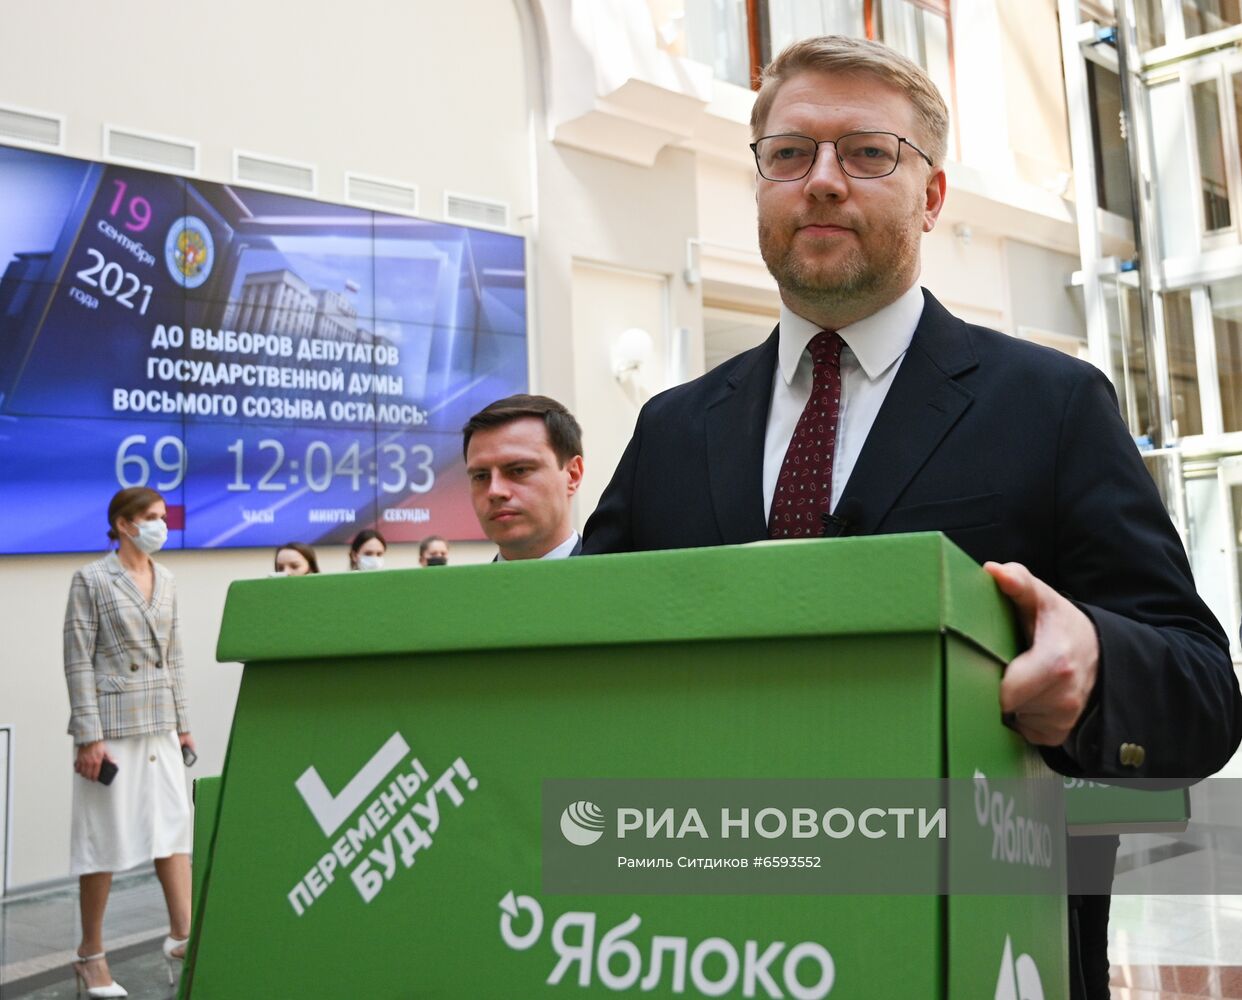 Подача документов партией "Яблоко" для регистрации кандидатов в депутаты Госдумы